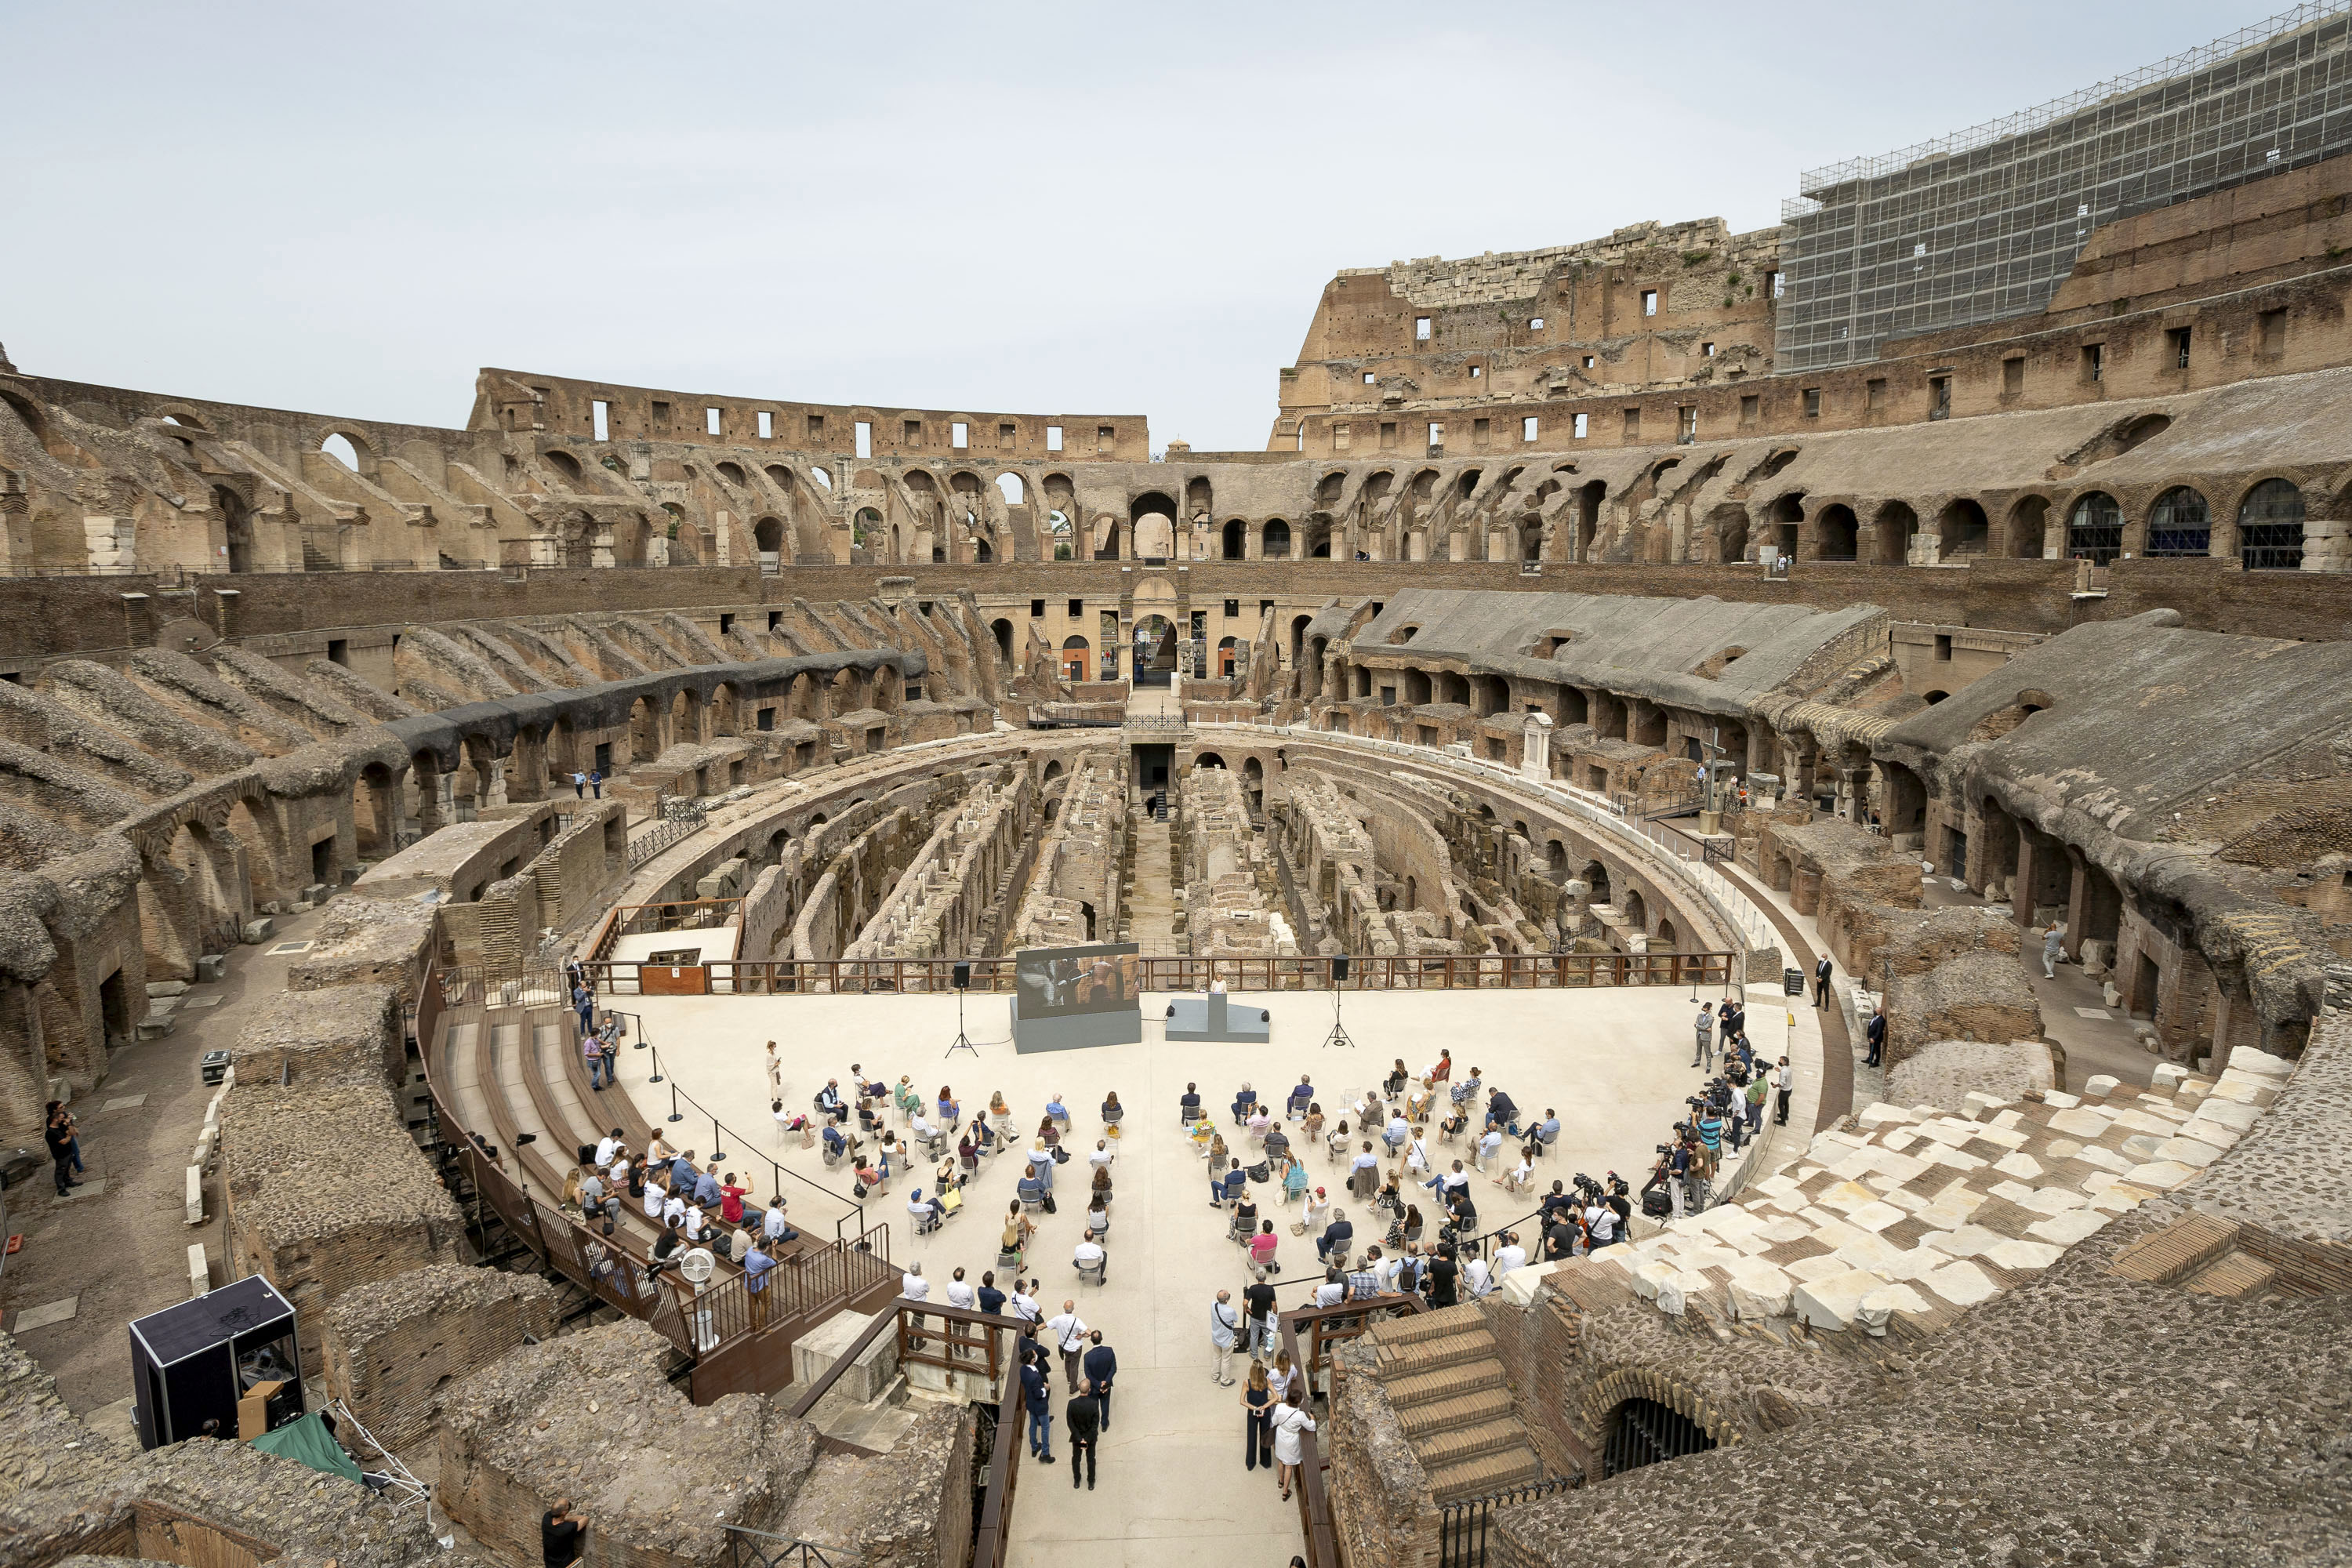 古代ローマの円形格闘技場 コロッセオ 地下施設を修復 産経ニュース